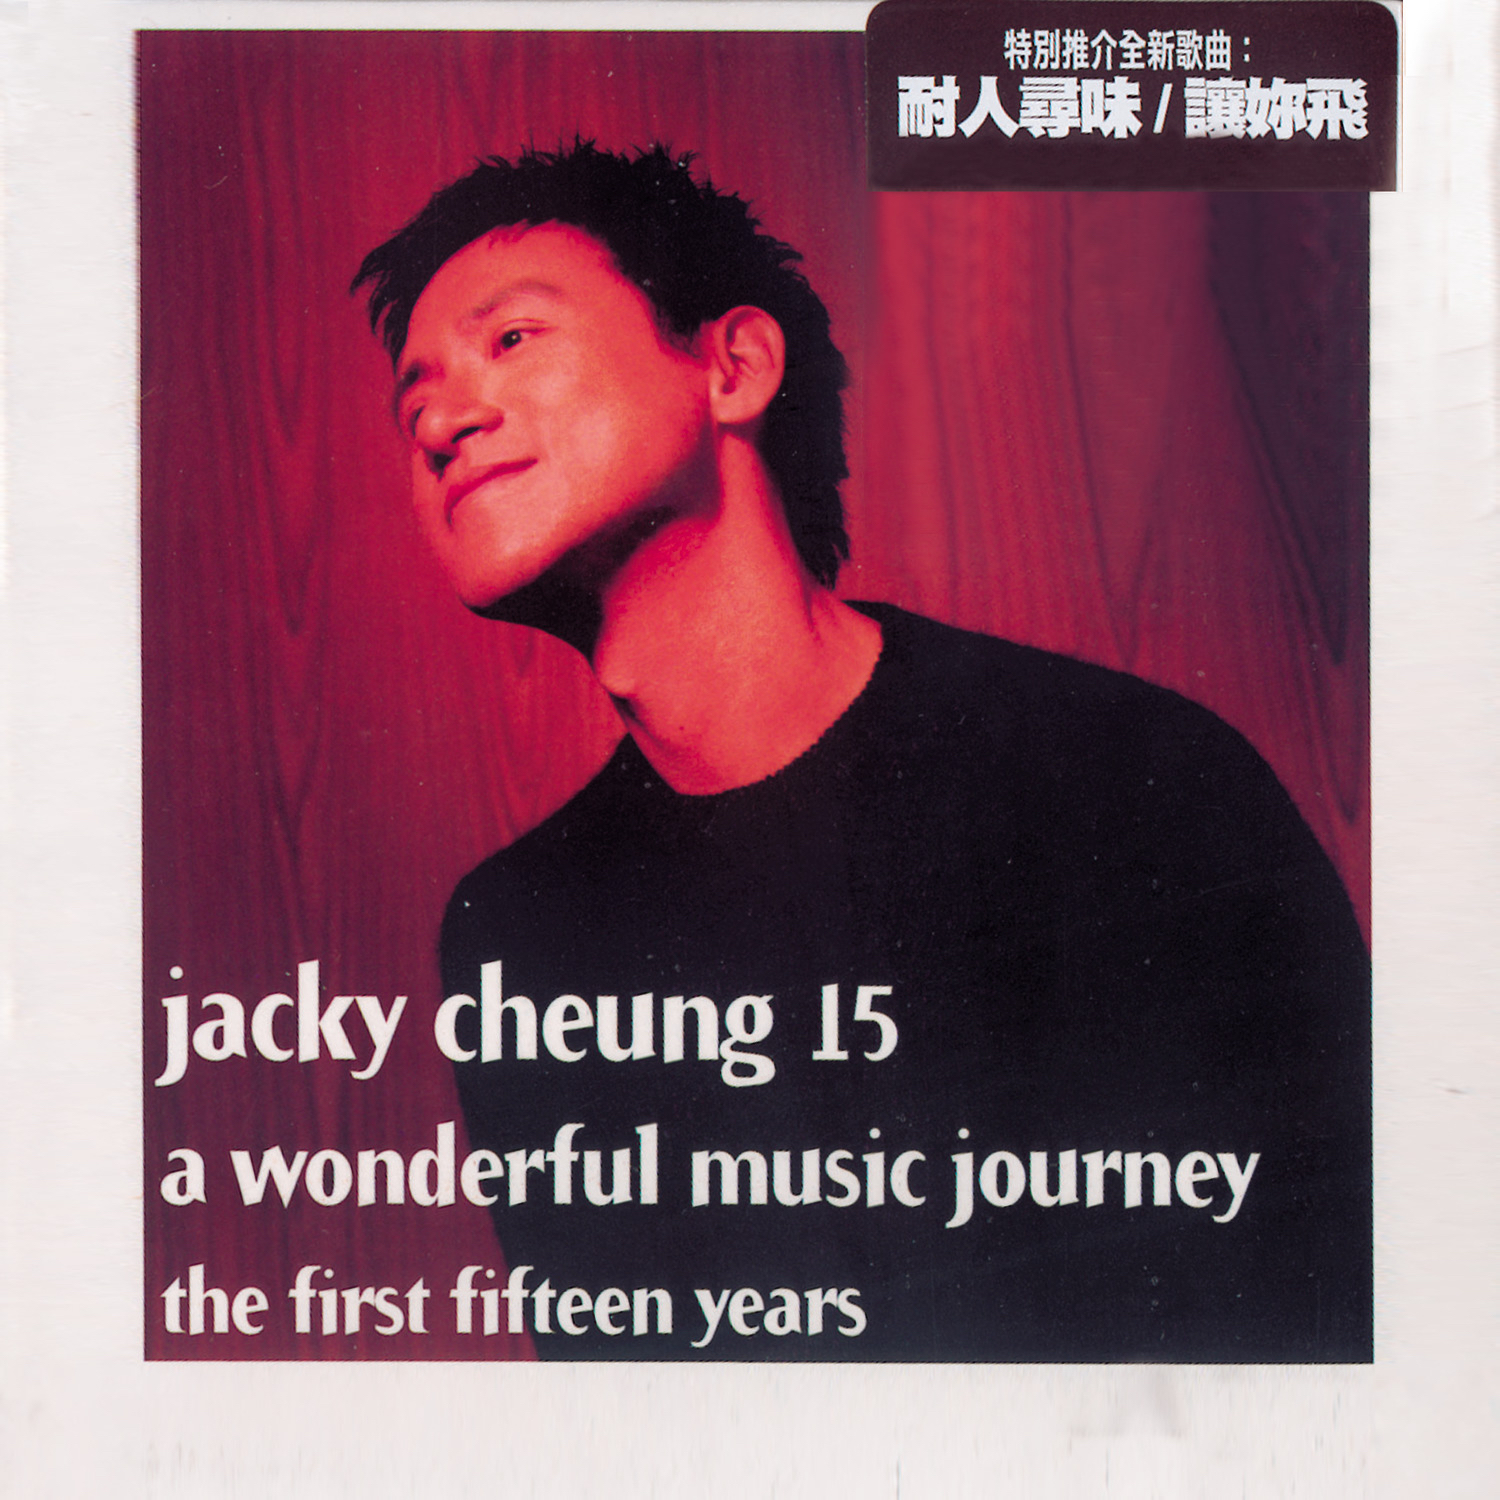 《雨夜的浪漫》歌词 歌手张学友-专辑Jacky Cheung 15-单曲《雨夜的浪漫》LRC歌词下载